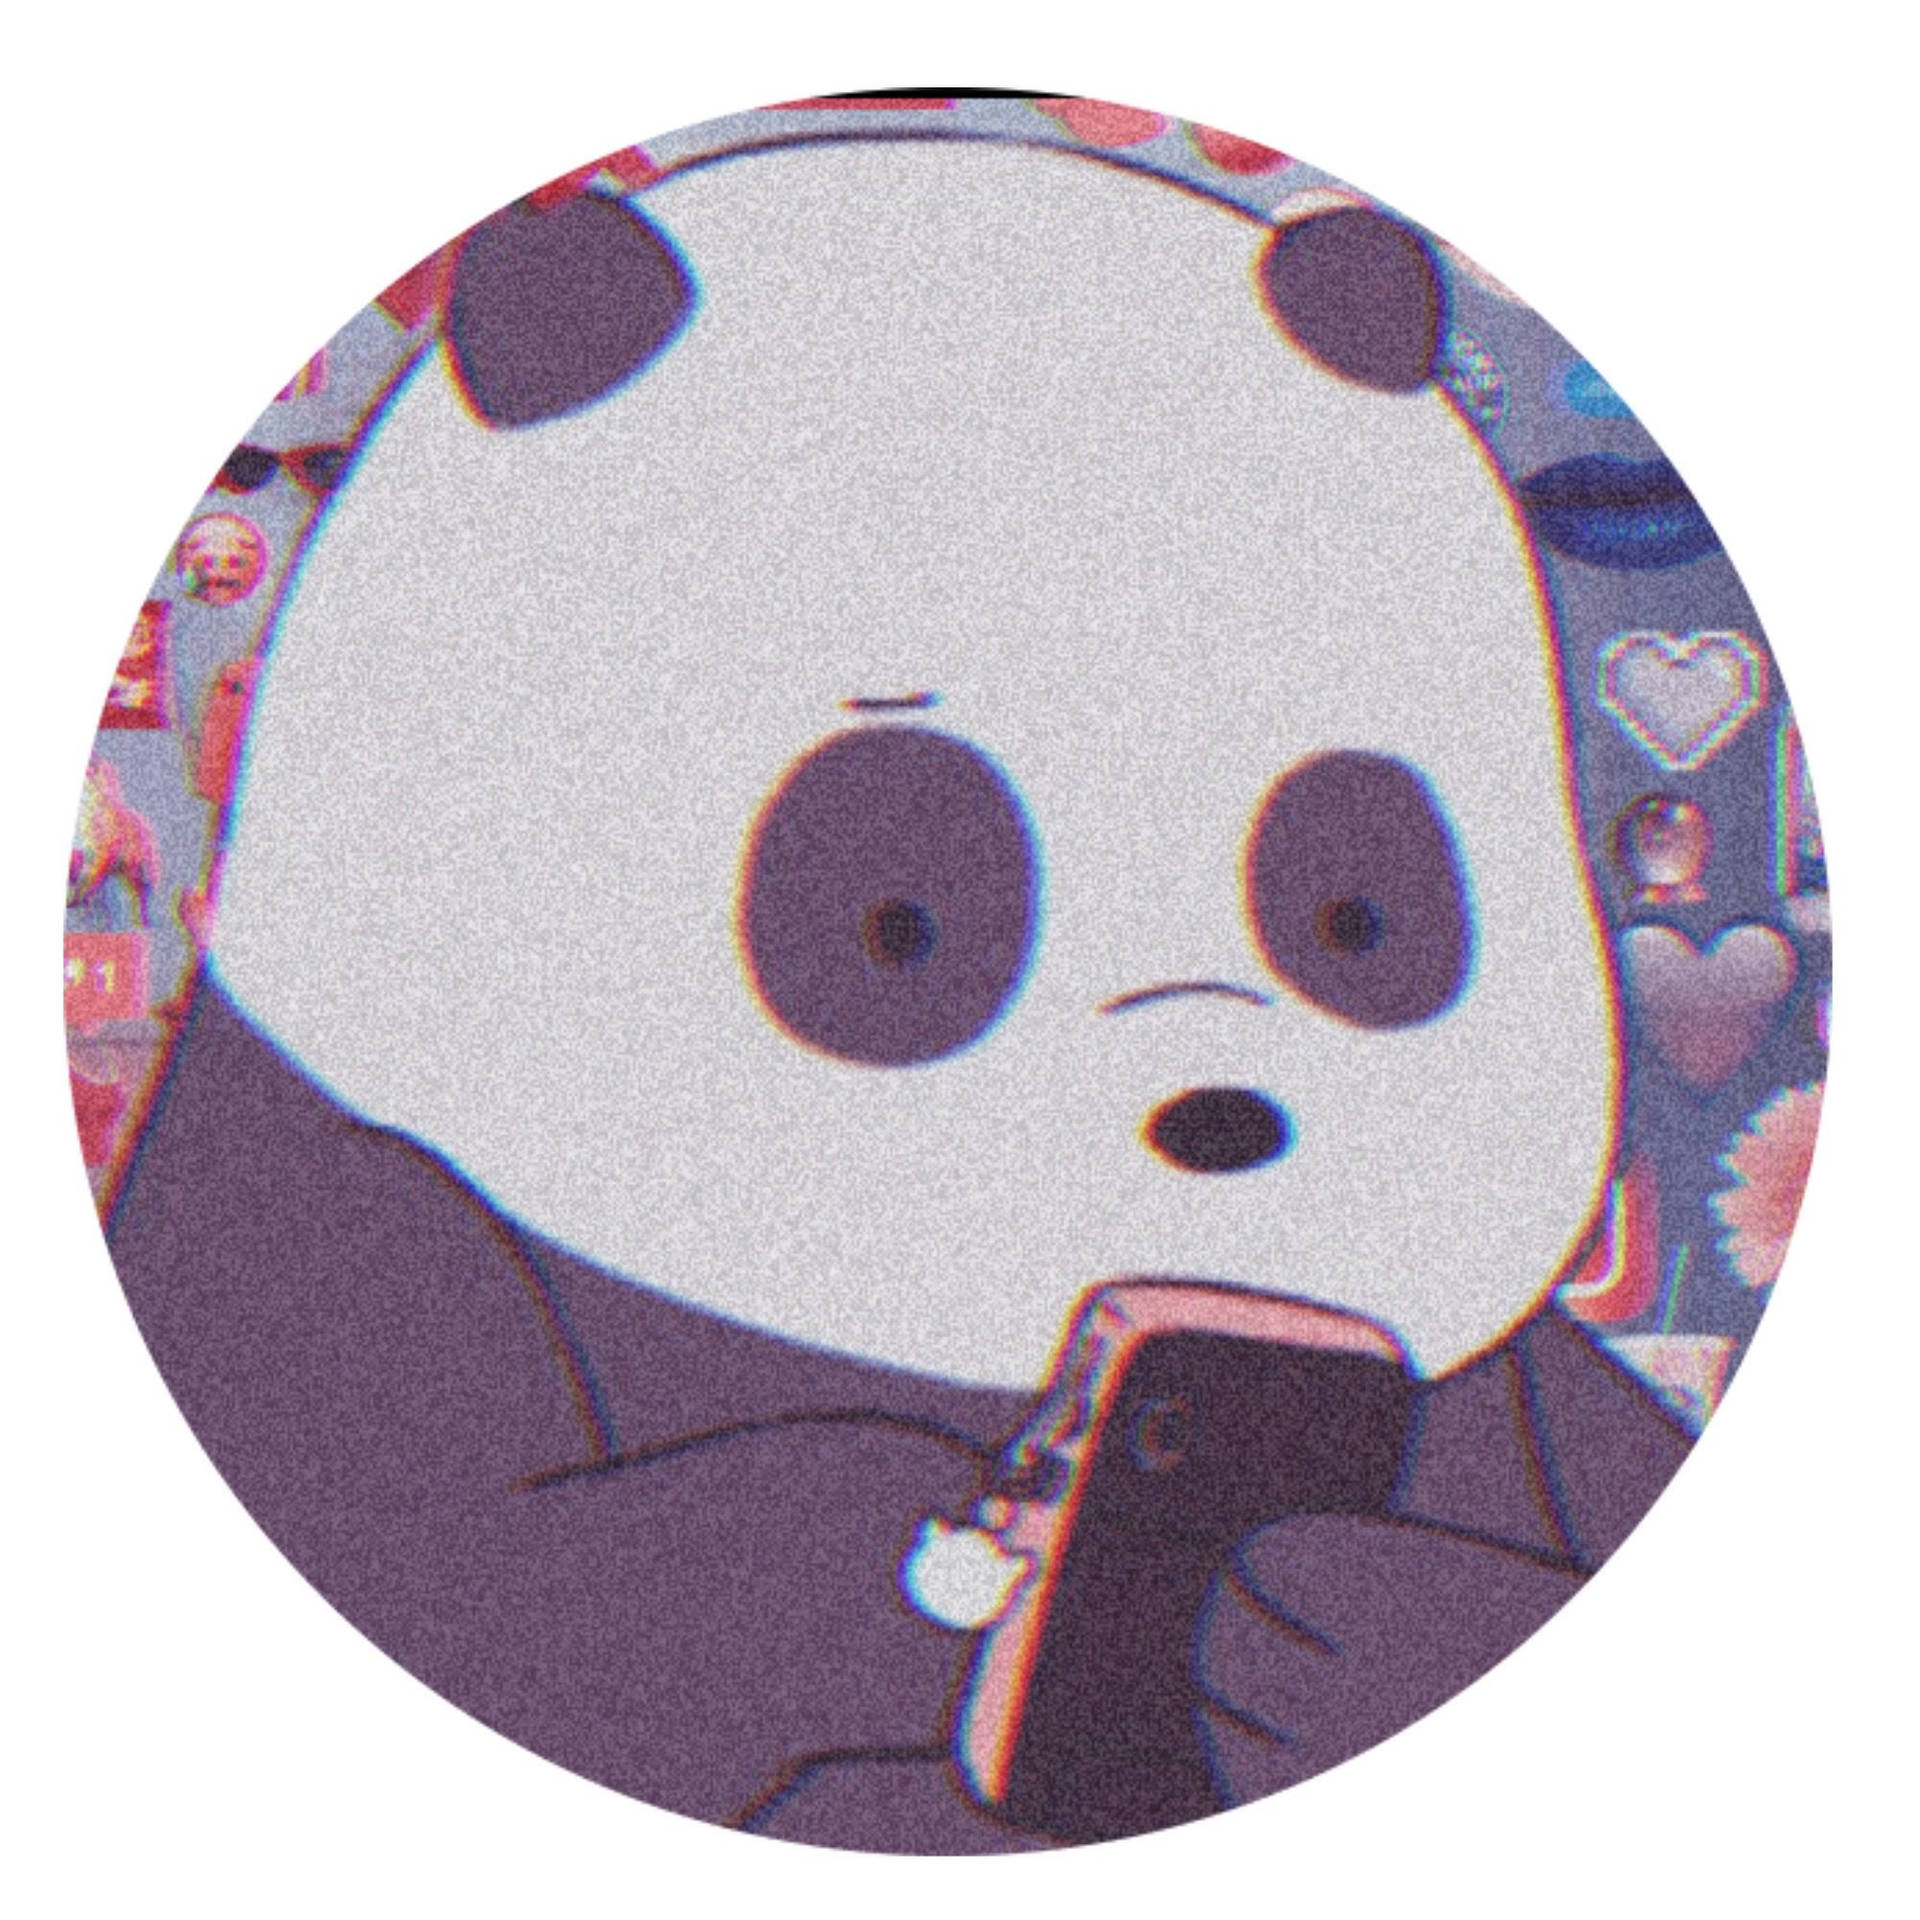 Download Aesthetic Profile Picture Cartoon Panda Wallpaper 